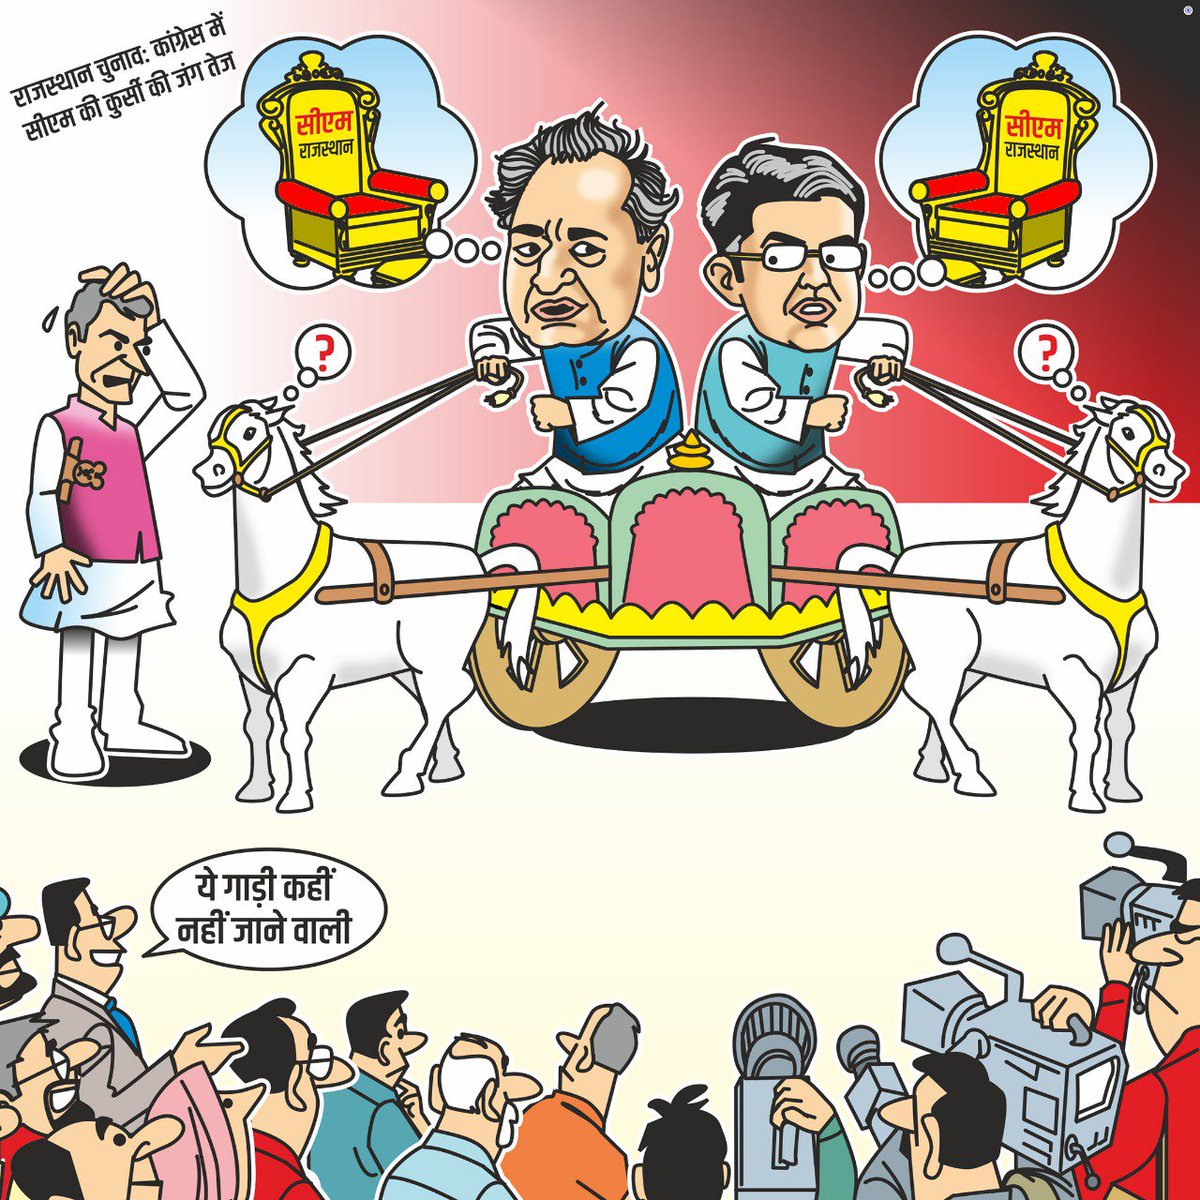 टुकड़ों के बँटी कांग्रेस पार्टी में चल रही कुर्सी की जंग। प्रदेश की जनता यह जानती है कि आपसी खींचतान और अंतर्विरोध में घिरी कांग्रेस पार्टी की प्राथमिकता प्रदेश का विकास नहीं बल्कि कुर्सी का लालच है, इसलिए मरुधरा को विकास के शिखर पर पहुंचाने के लिए #RajePhirEkBaar